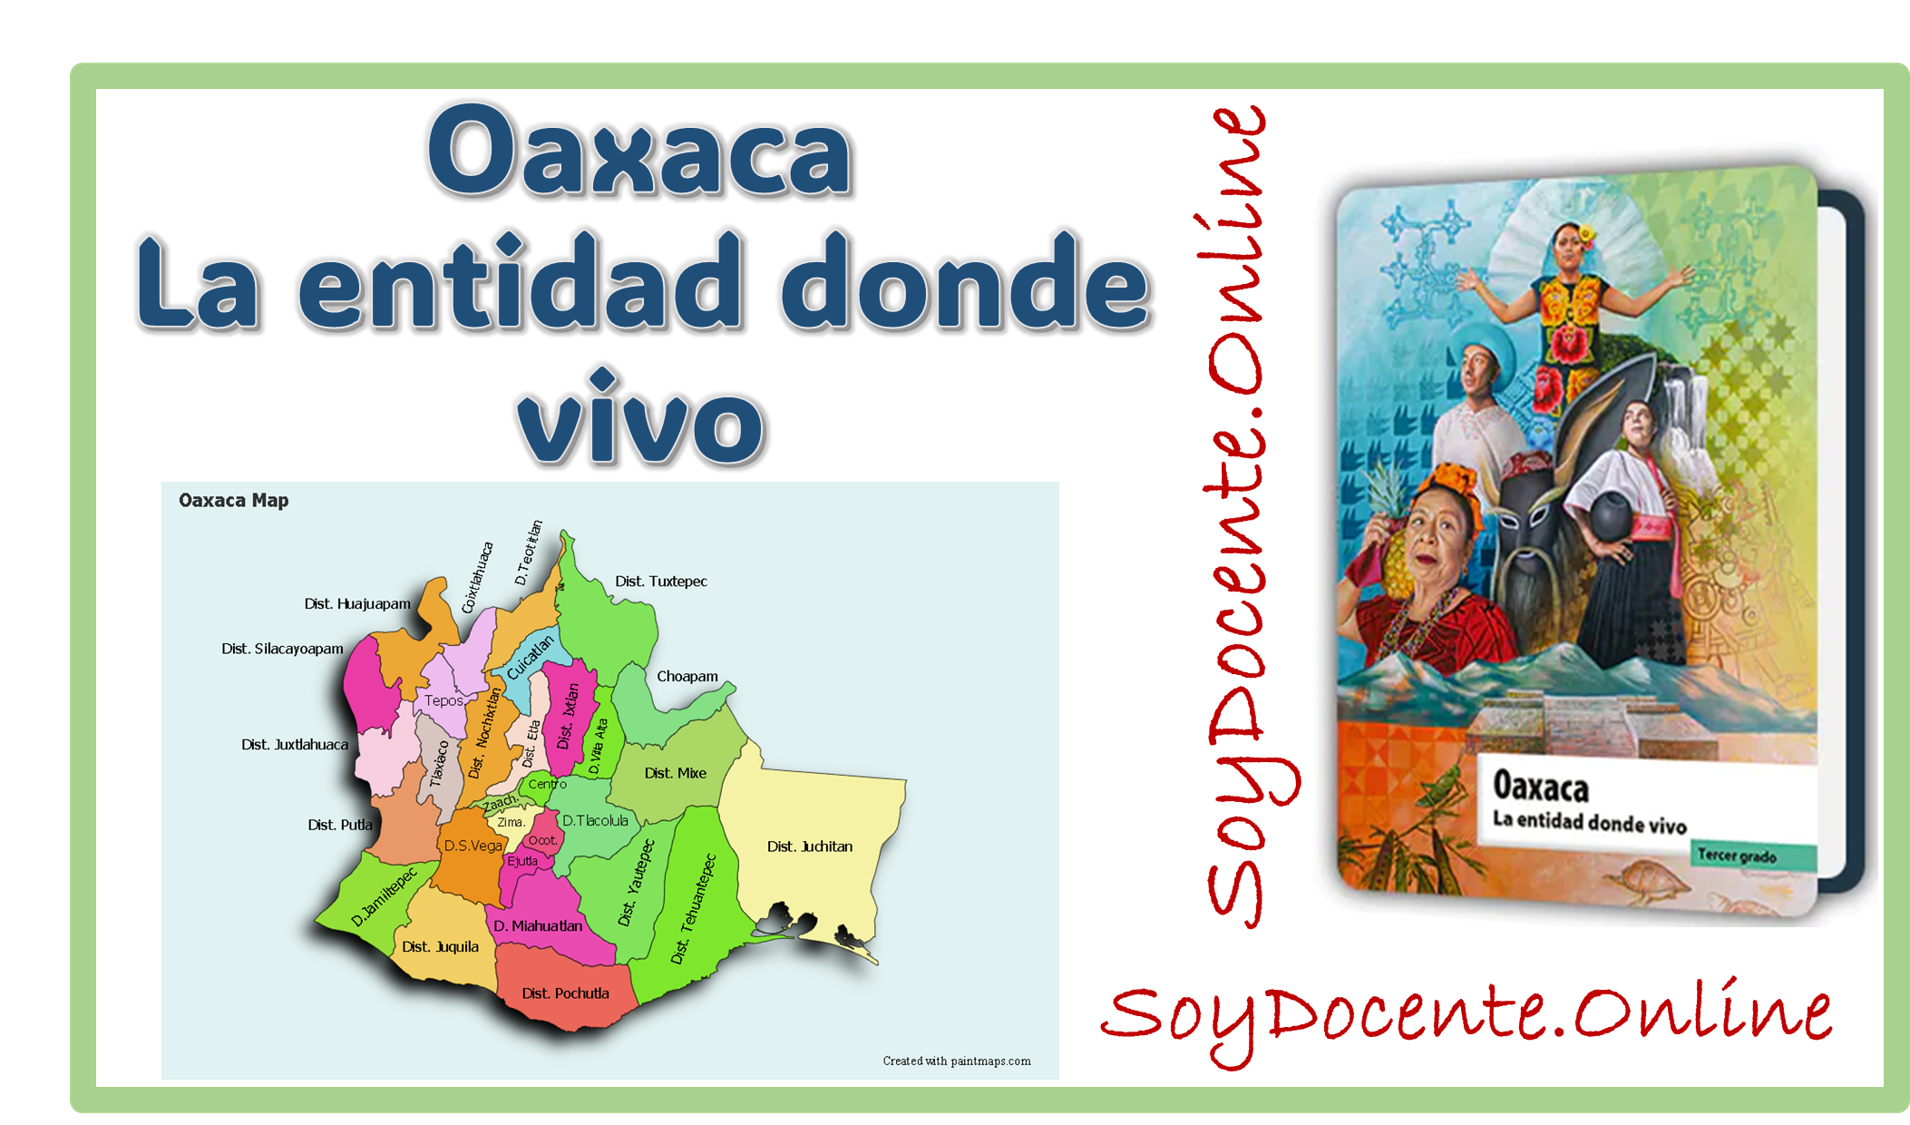 Descarga aquí el Libro de Oaxaca La entidad donde vivo tercer grado de Primaria, elaborado por la SEP, distribuido por la CONALITEG. 